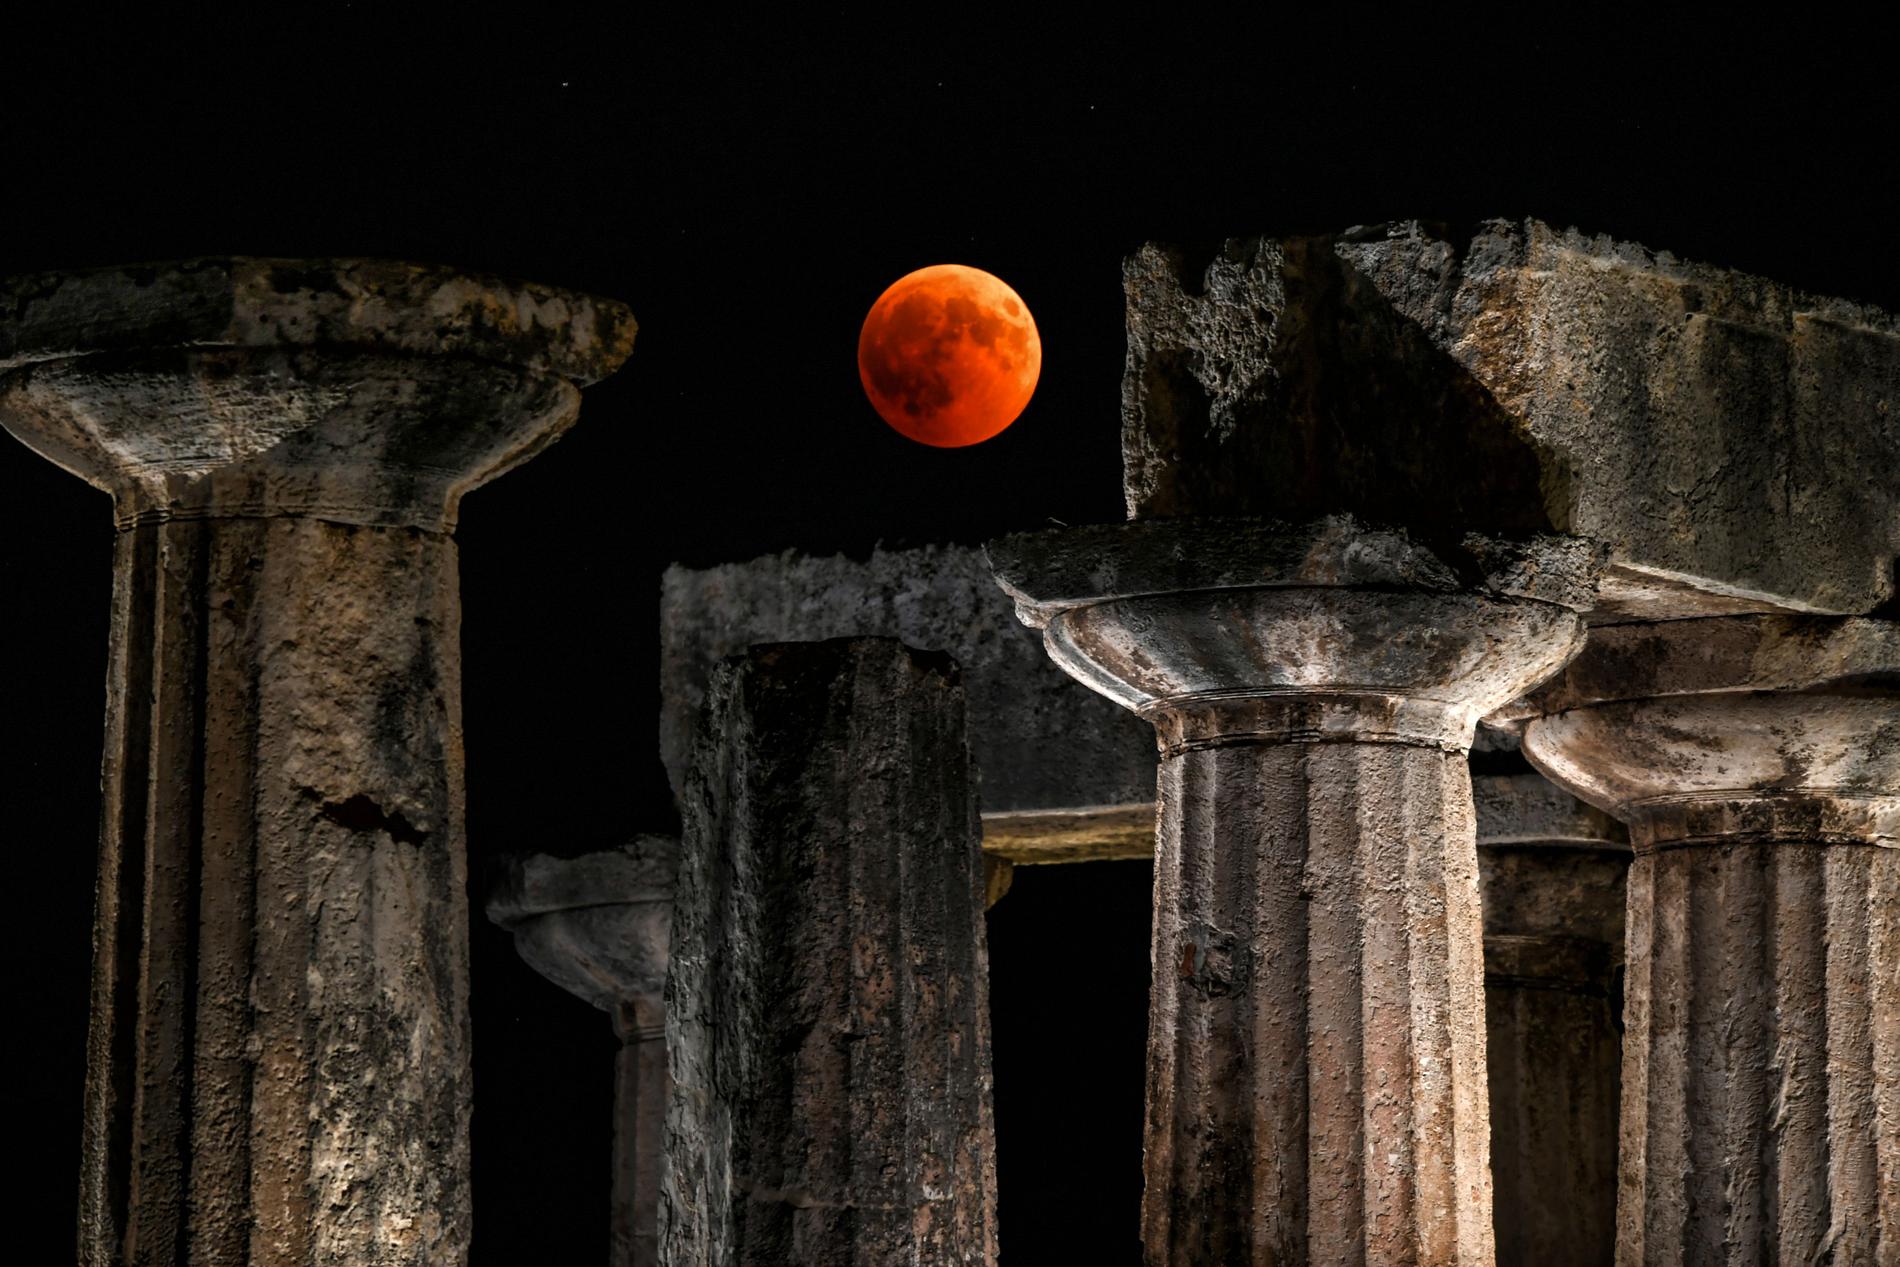 Den här bilden togs vid Apollontemplet i Korinth väster om Greklands huvudstad Aten.